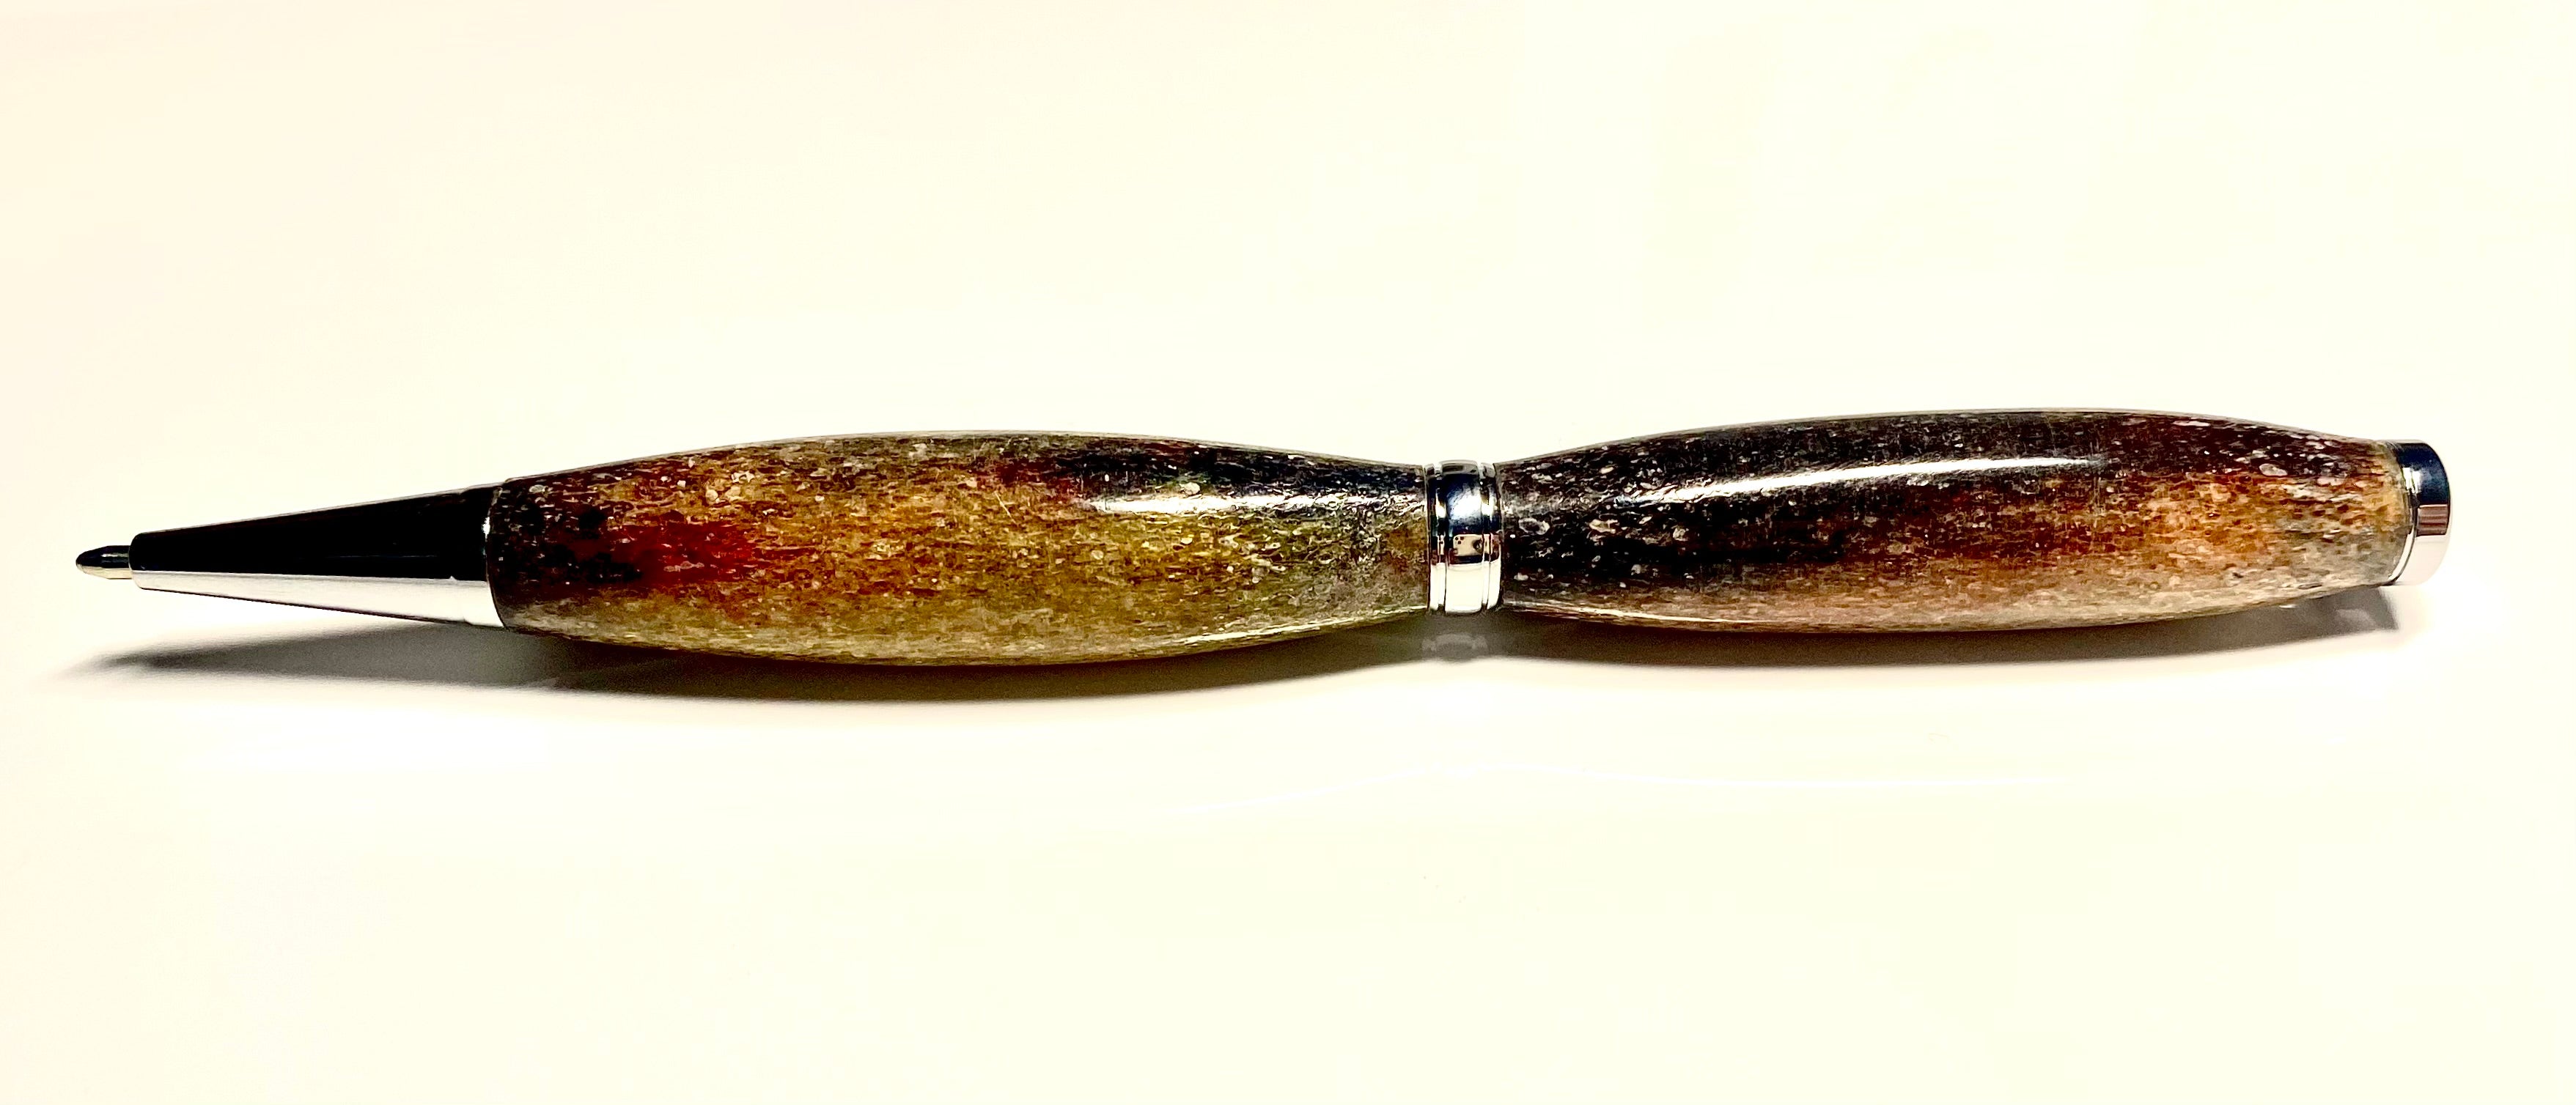 Dyed Caribou Antler Pen